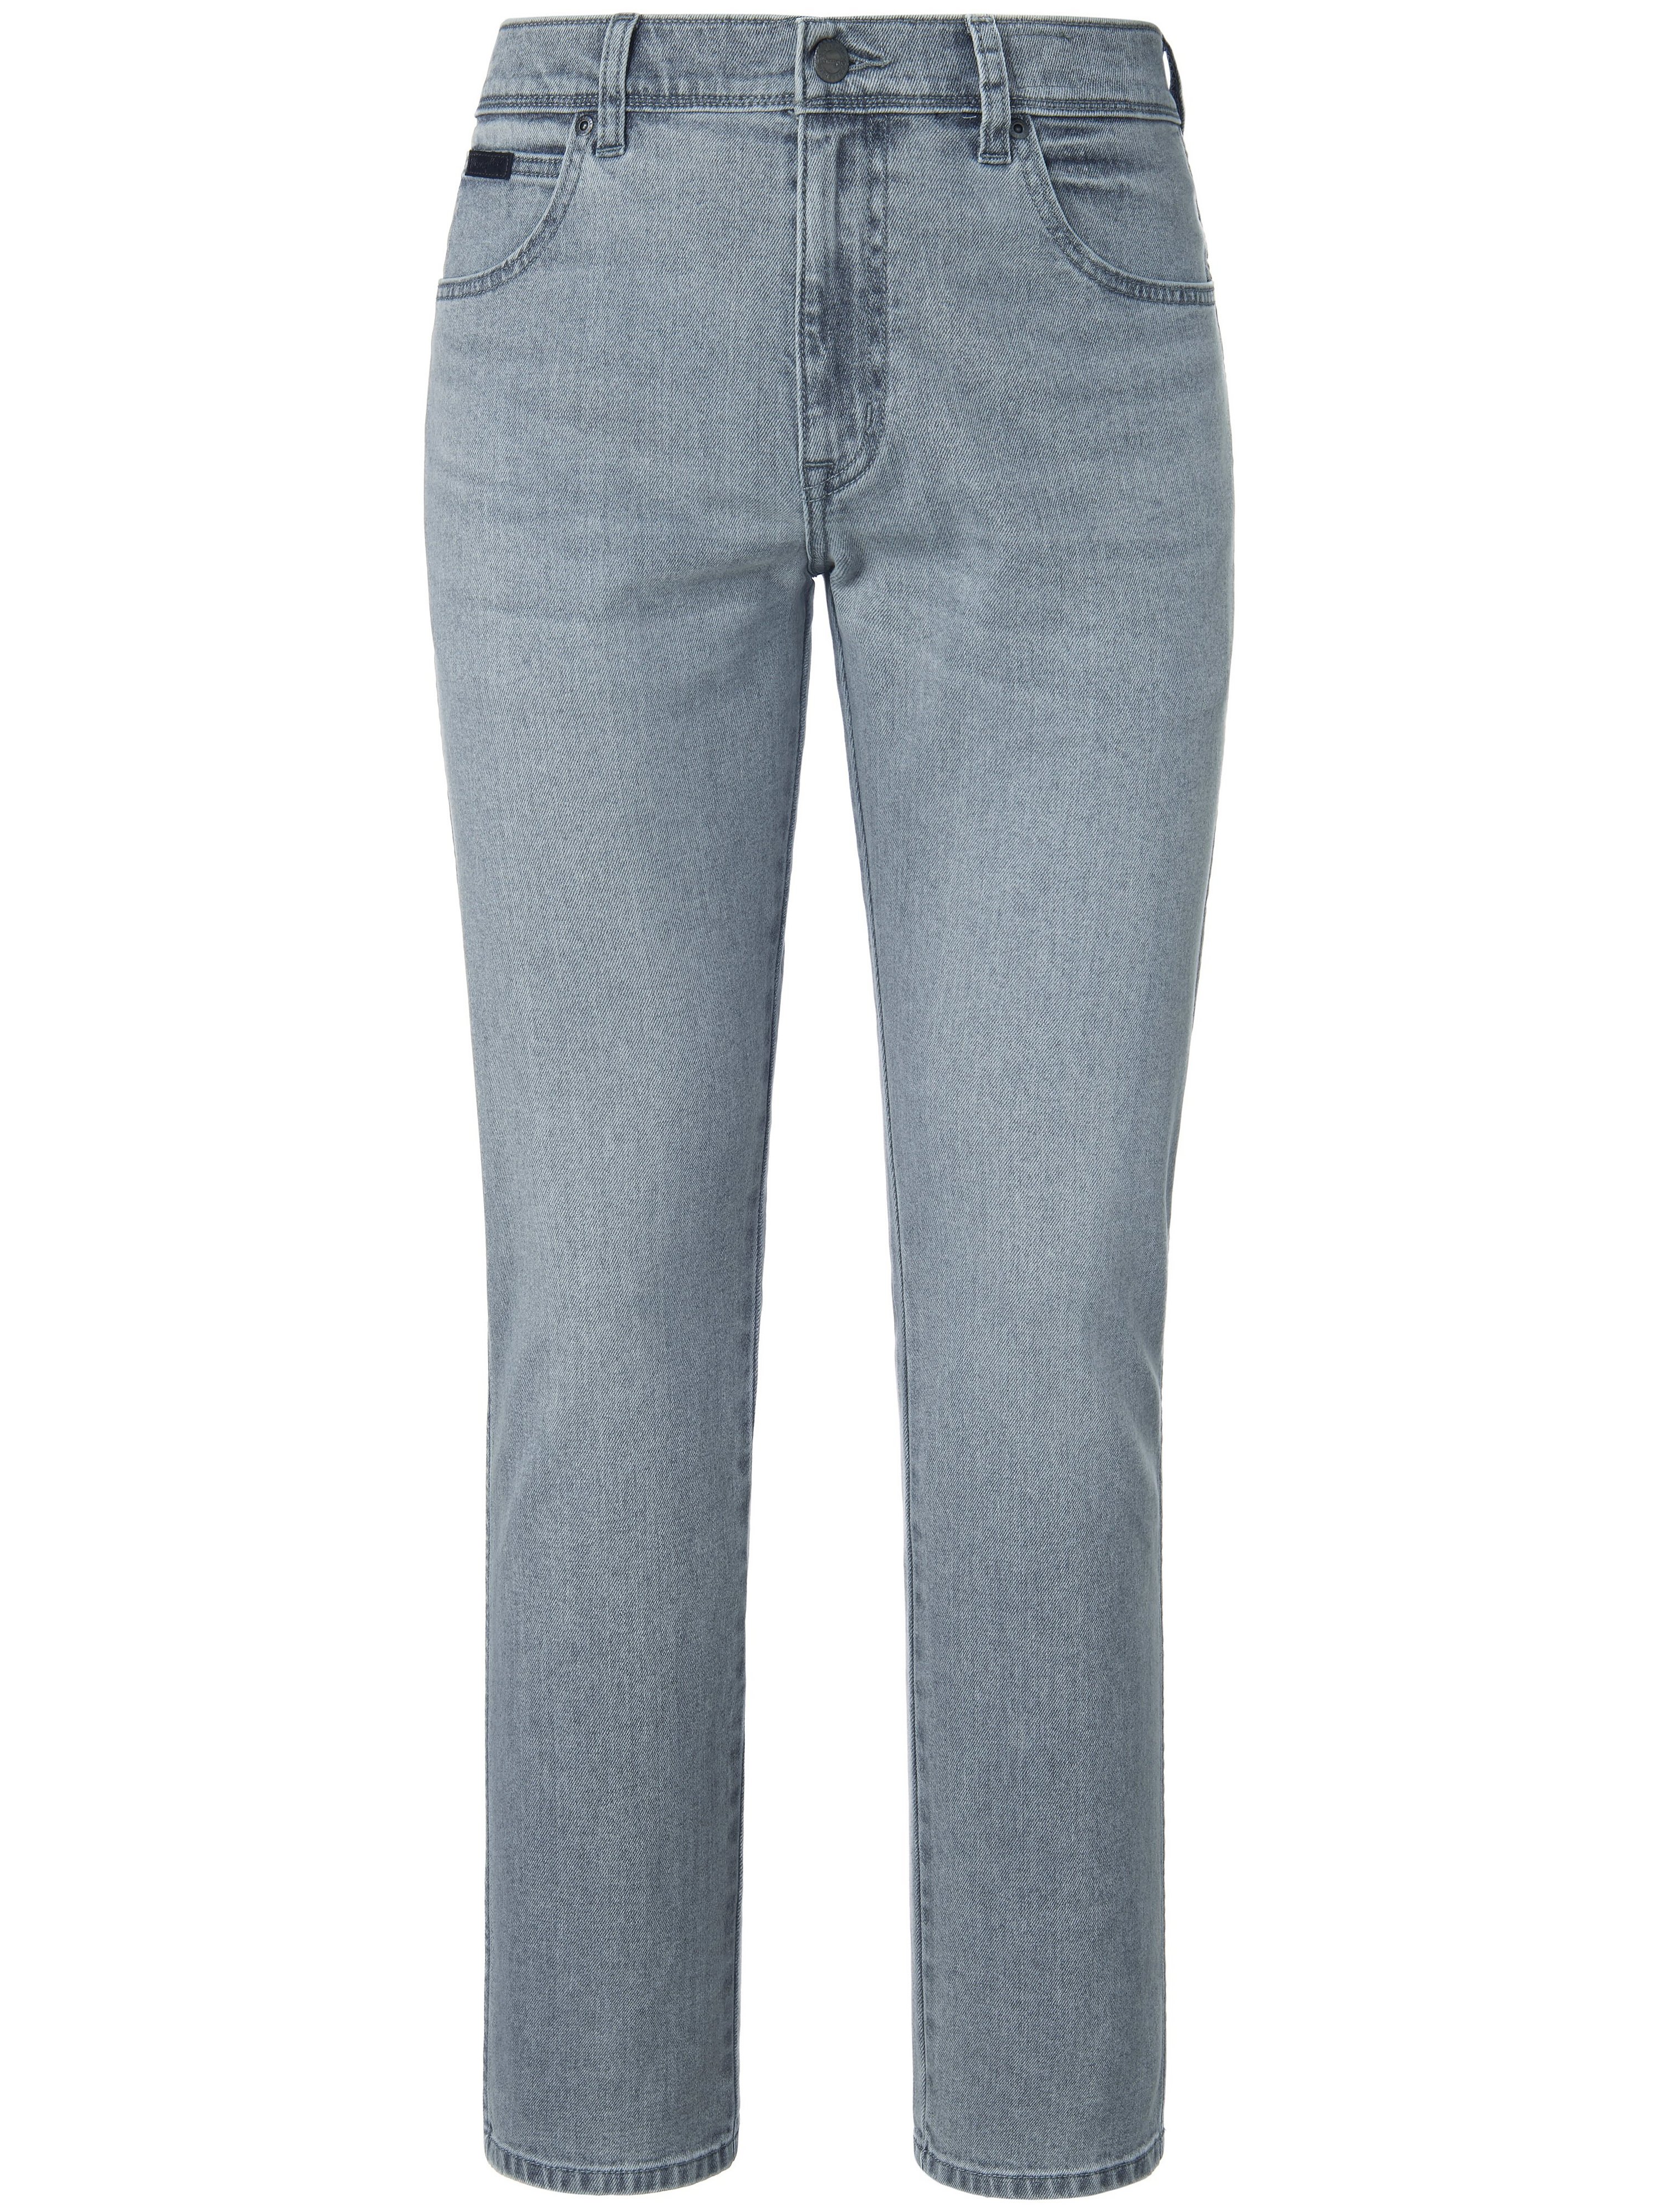 Jeans Inch 32 Wrangler grau Größe: 33